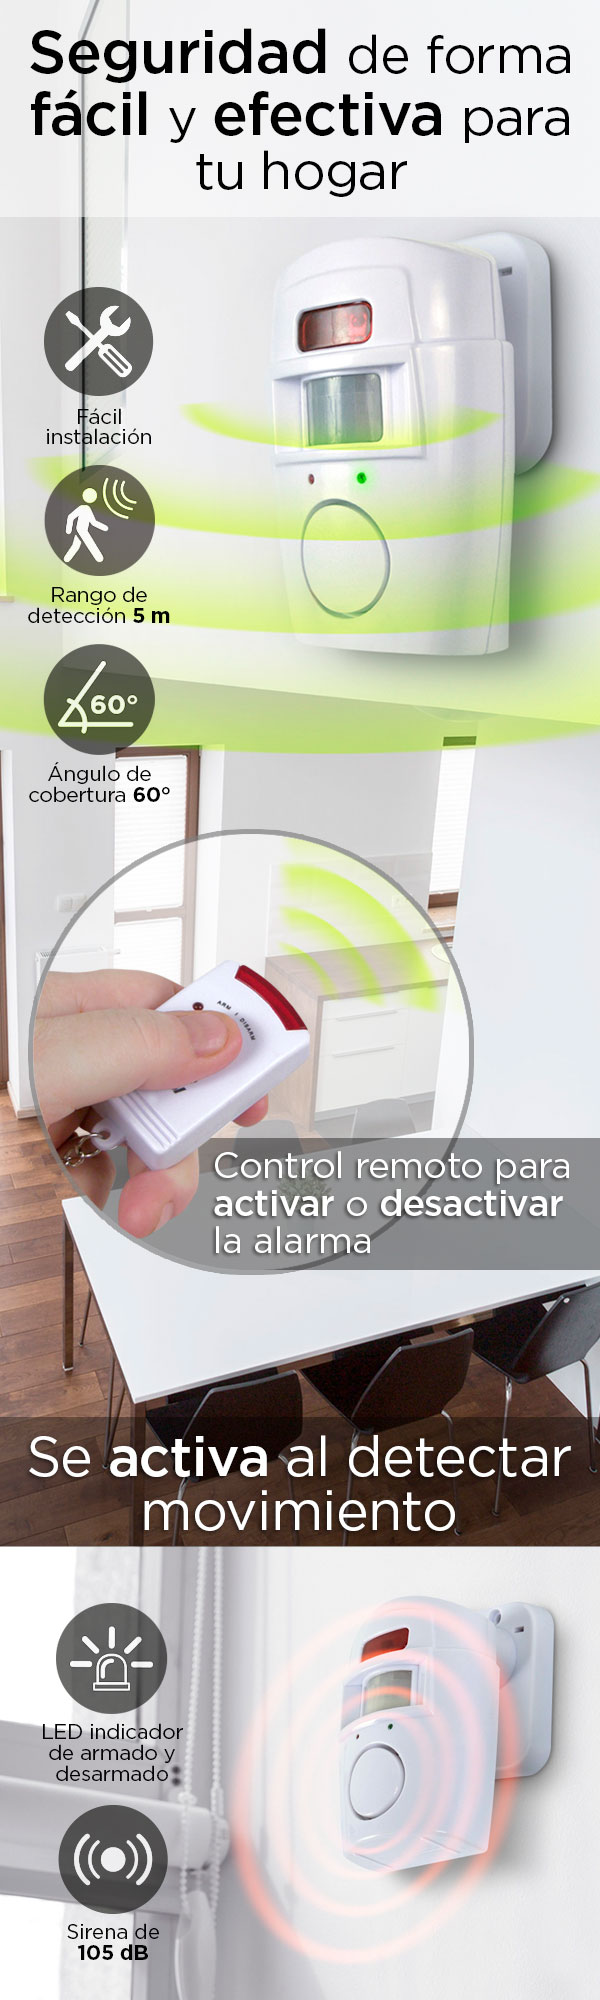 ALARMA CON SENSOR DE MOVIMIENTO | The Home Depot México